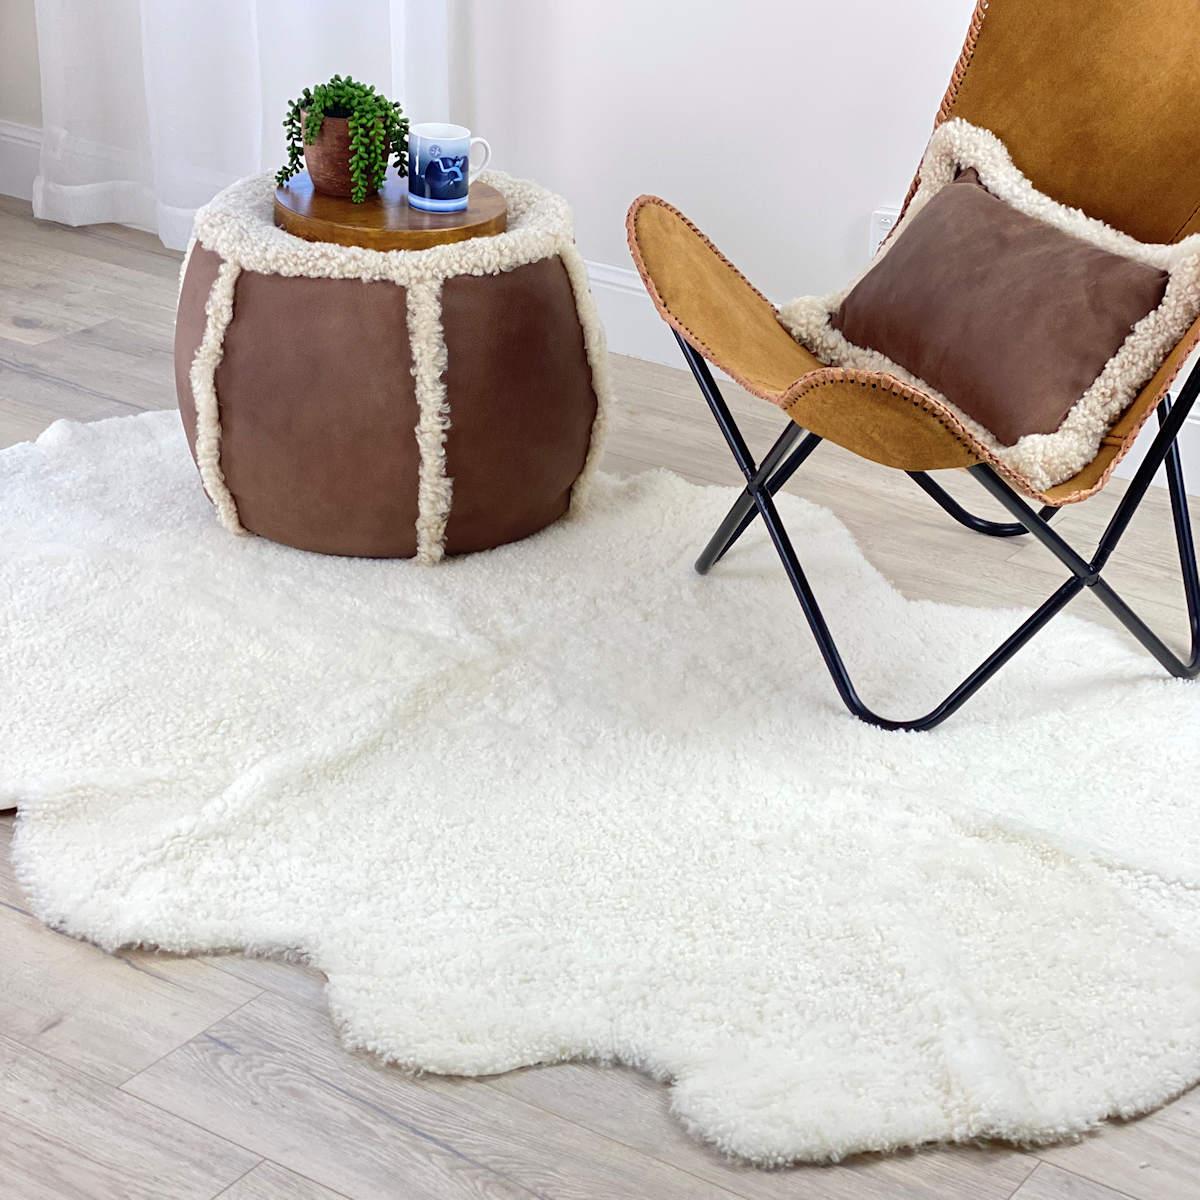 Bringen Sie mit diesem Schafsfellteppich aus reiner Wolle charmante Texturen in Ihre Einrichtung. Die Boucle-Wolle ist ein kurzes, gekräuseltes Schafsfell, das jeden Innenraumboden zum Leben erweckt. Der 100x200cm große Bodenteppich verbindet